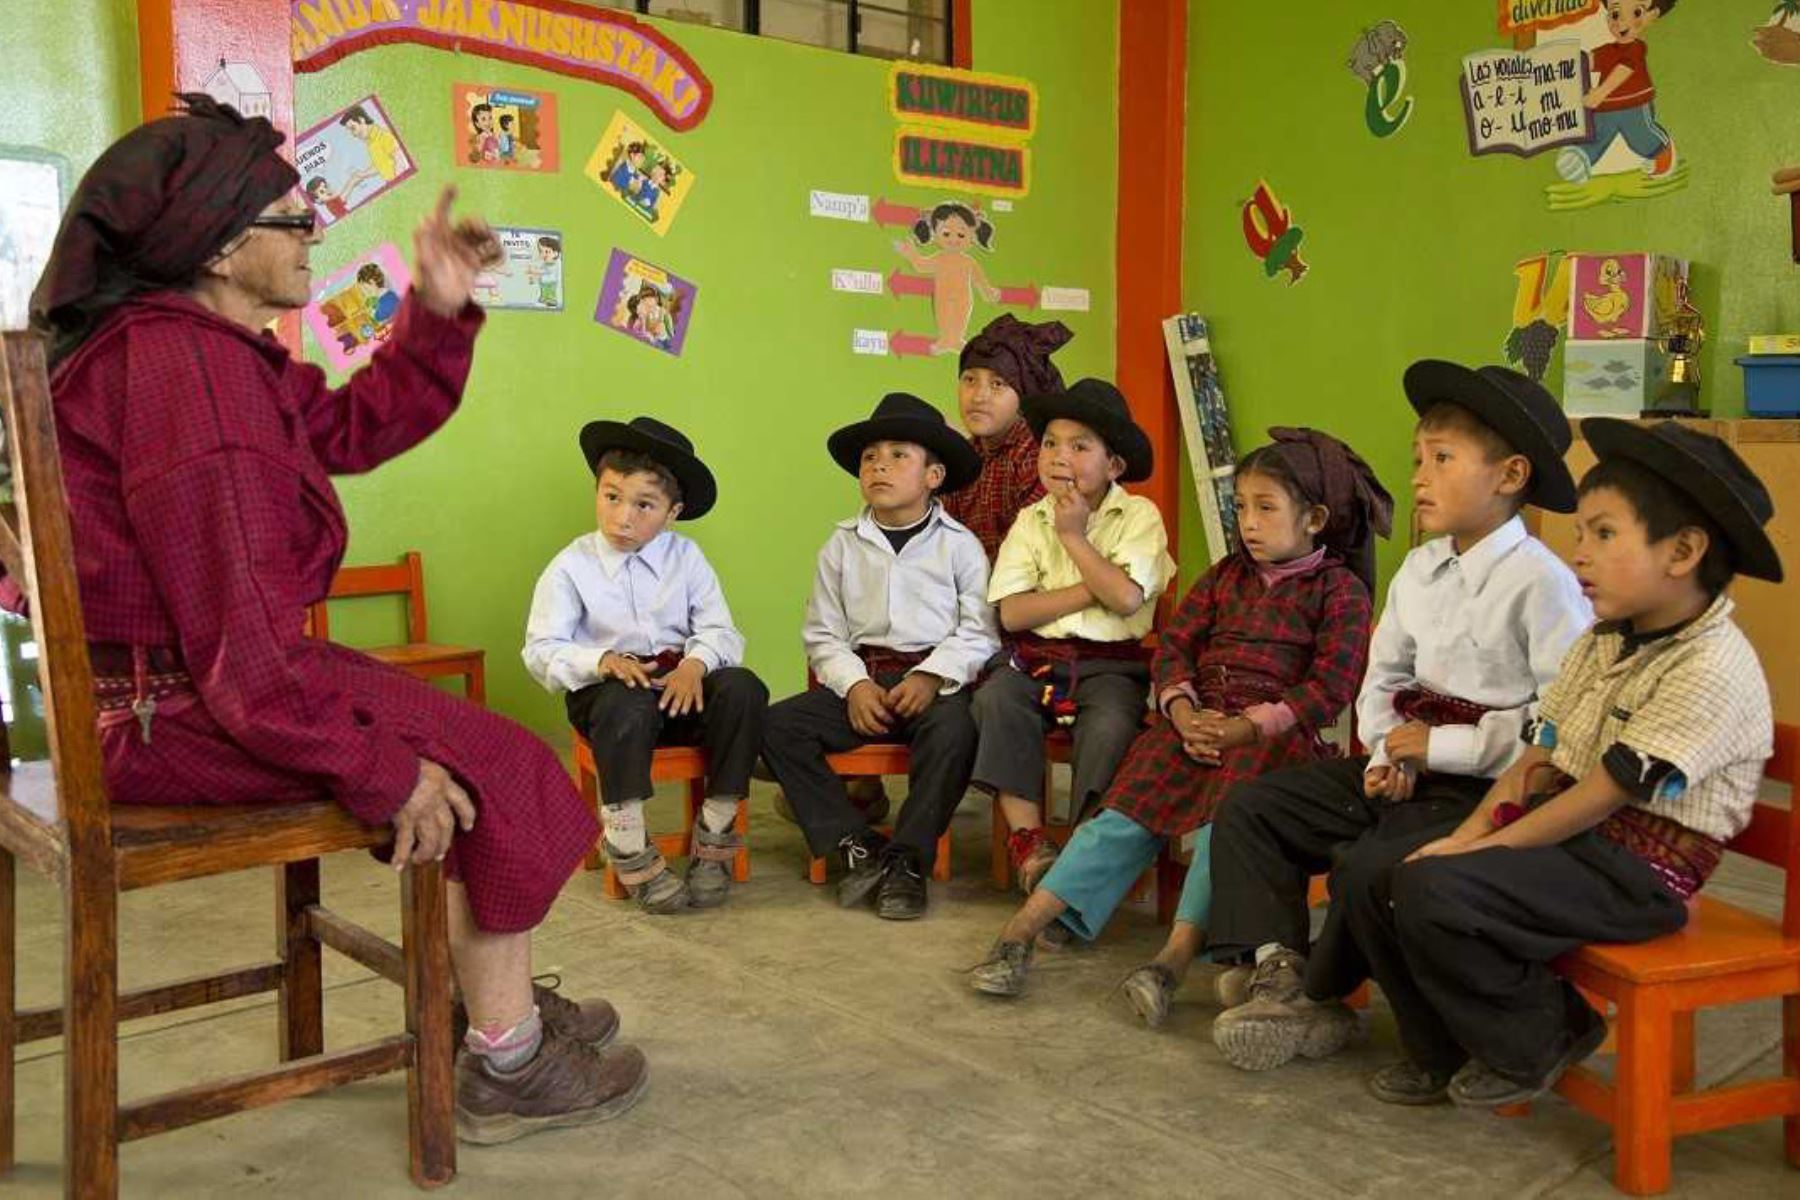 El Perú cuenta actualmente con 48 lenguas originarias, de las cuales 44 son amazónicas y 4 andinas. ANDINA/Difusión